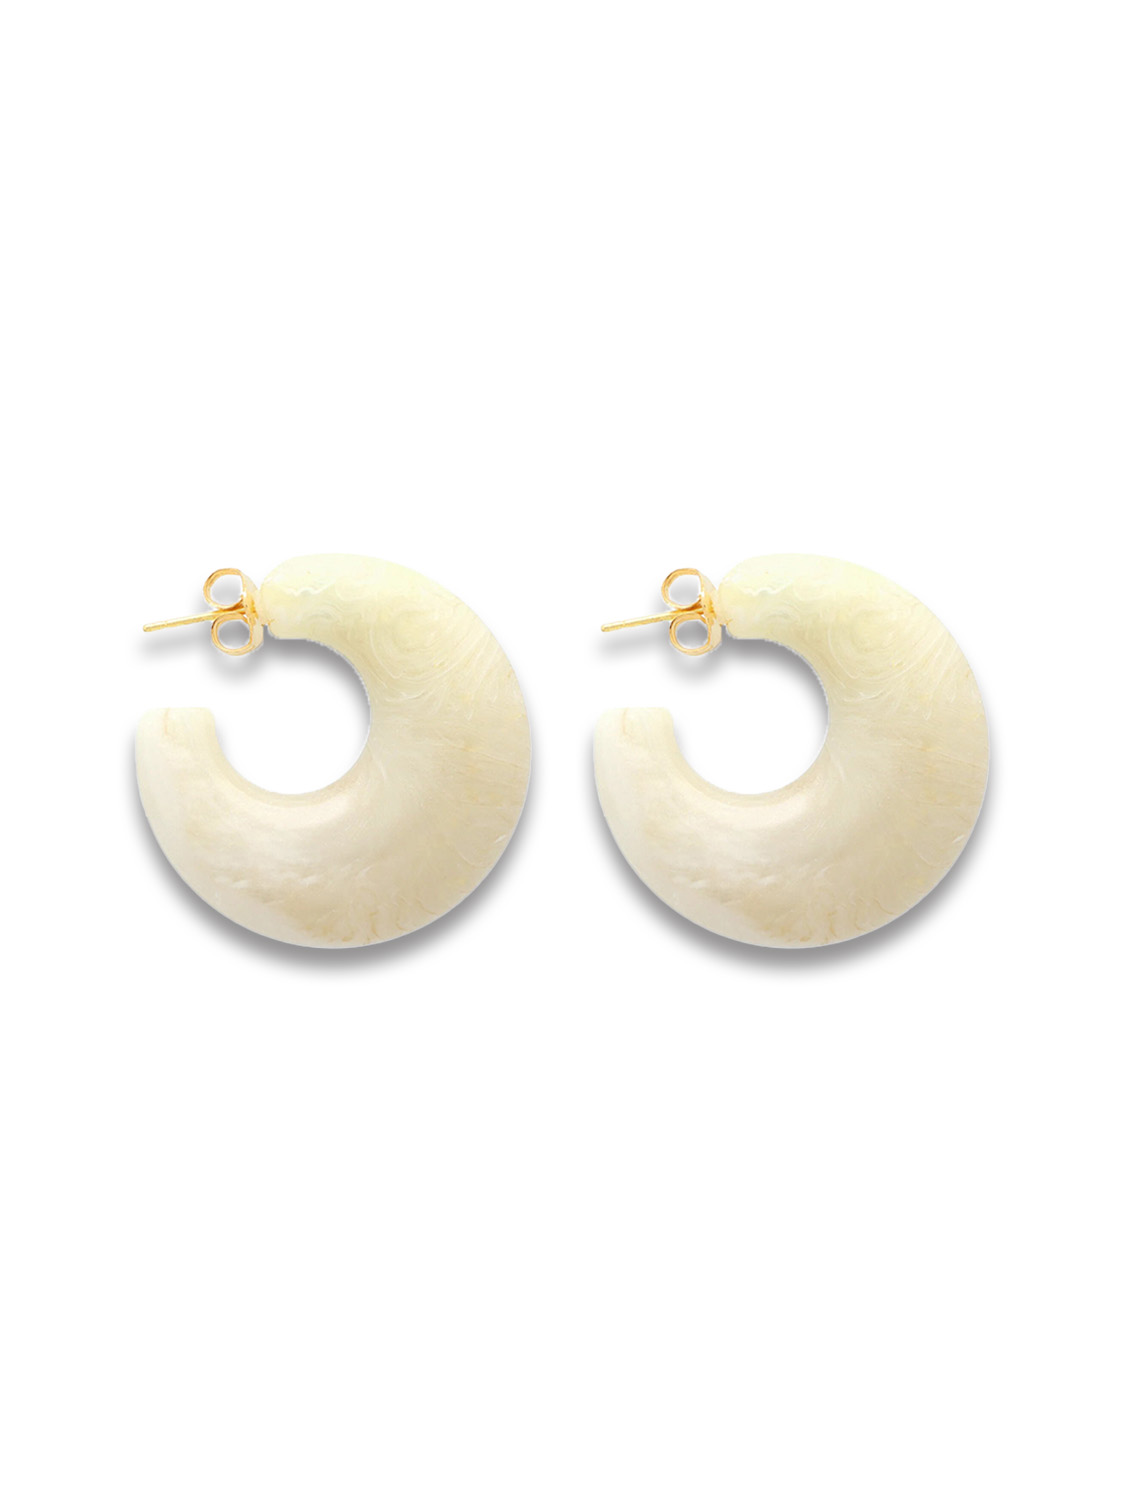 Moon Earring - Ear studs in creole shape